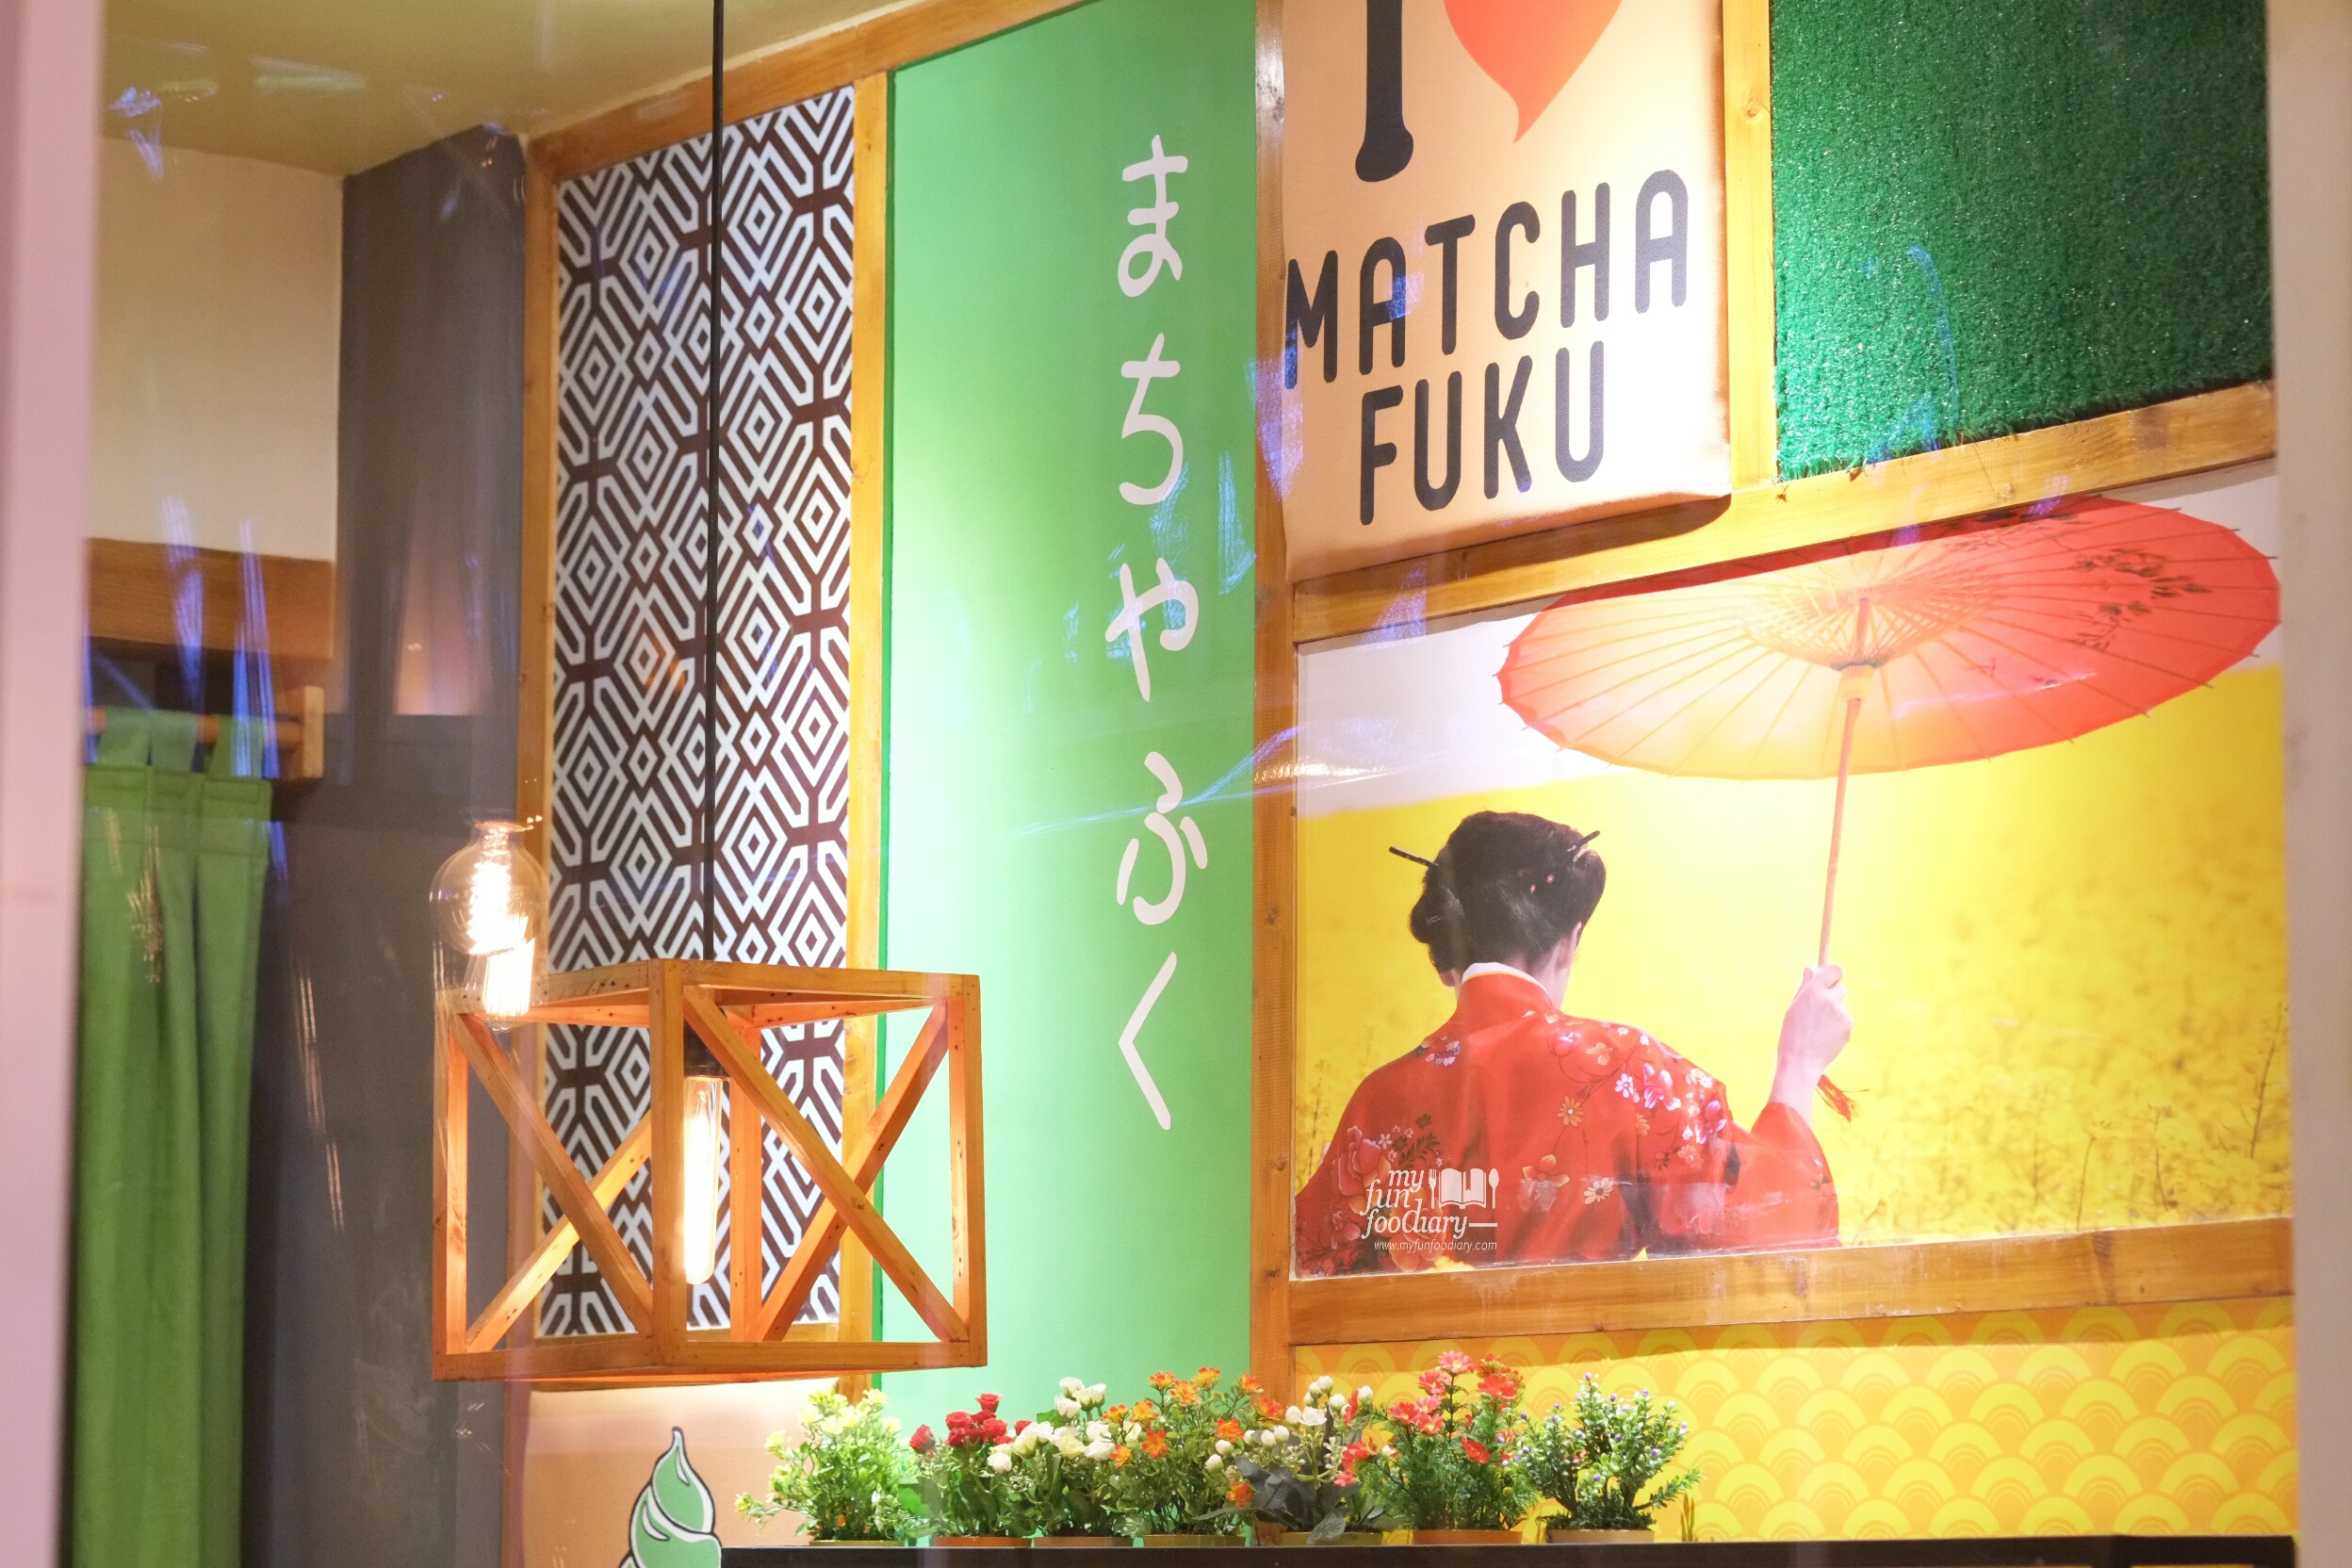 Simple Japanese Decor at Matchafuku Citra by Myfunfoodiary